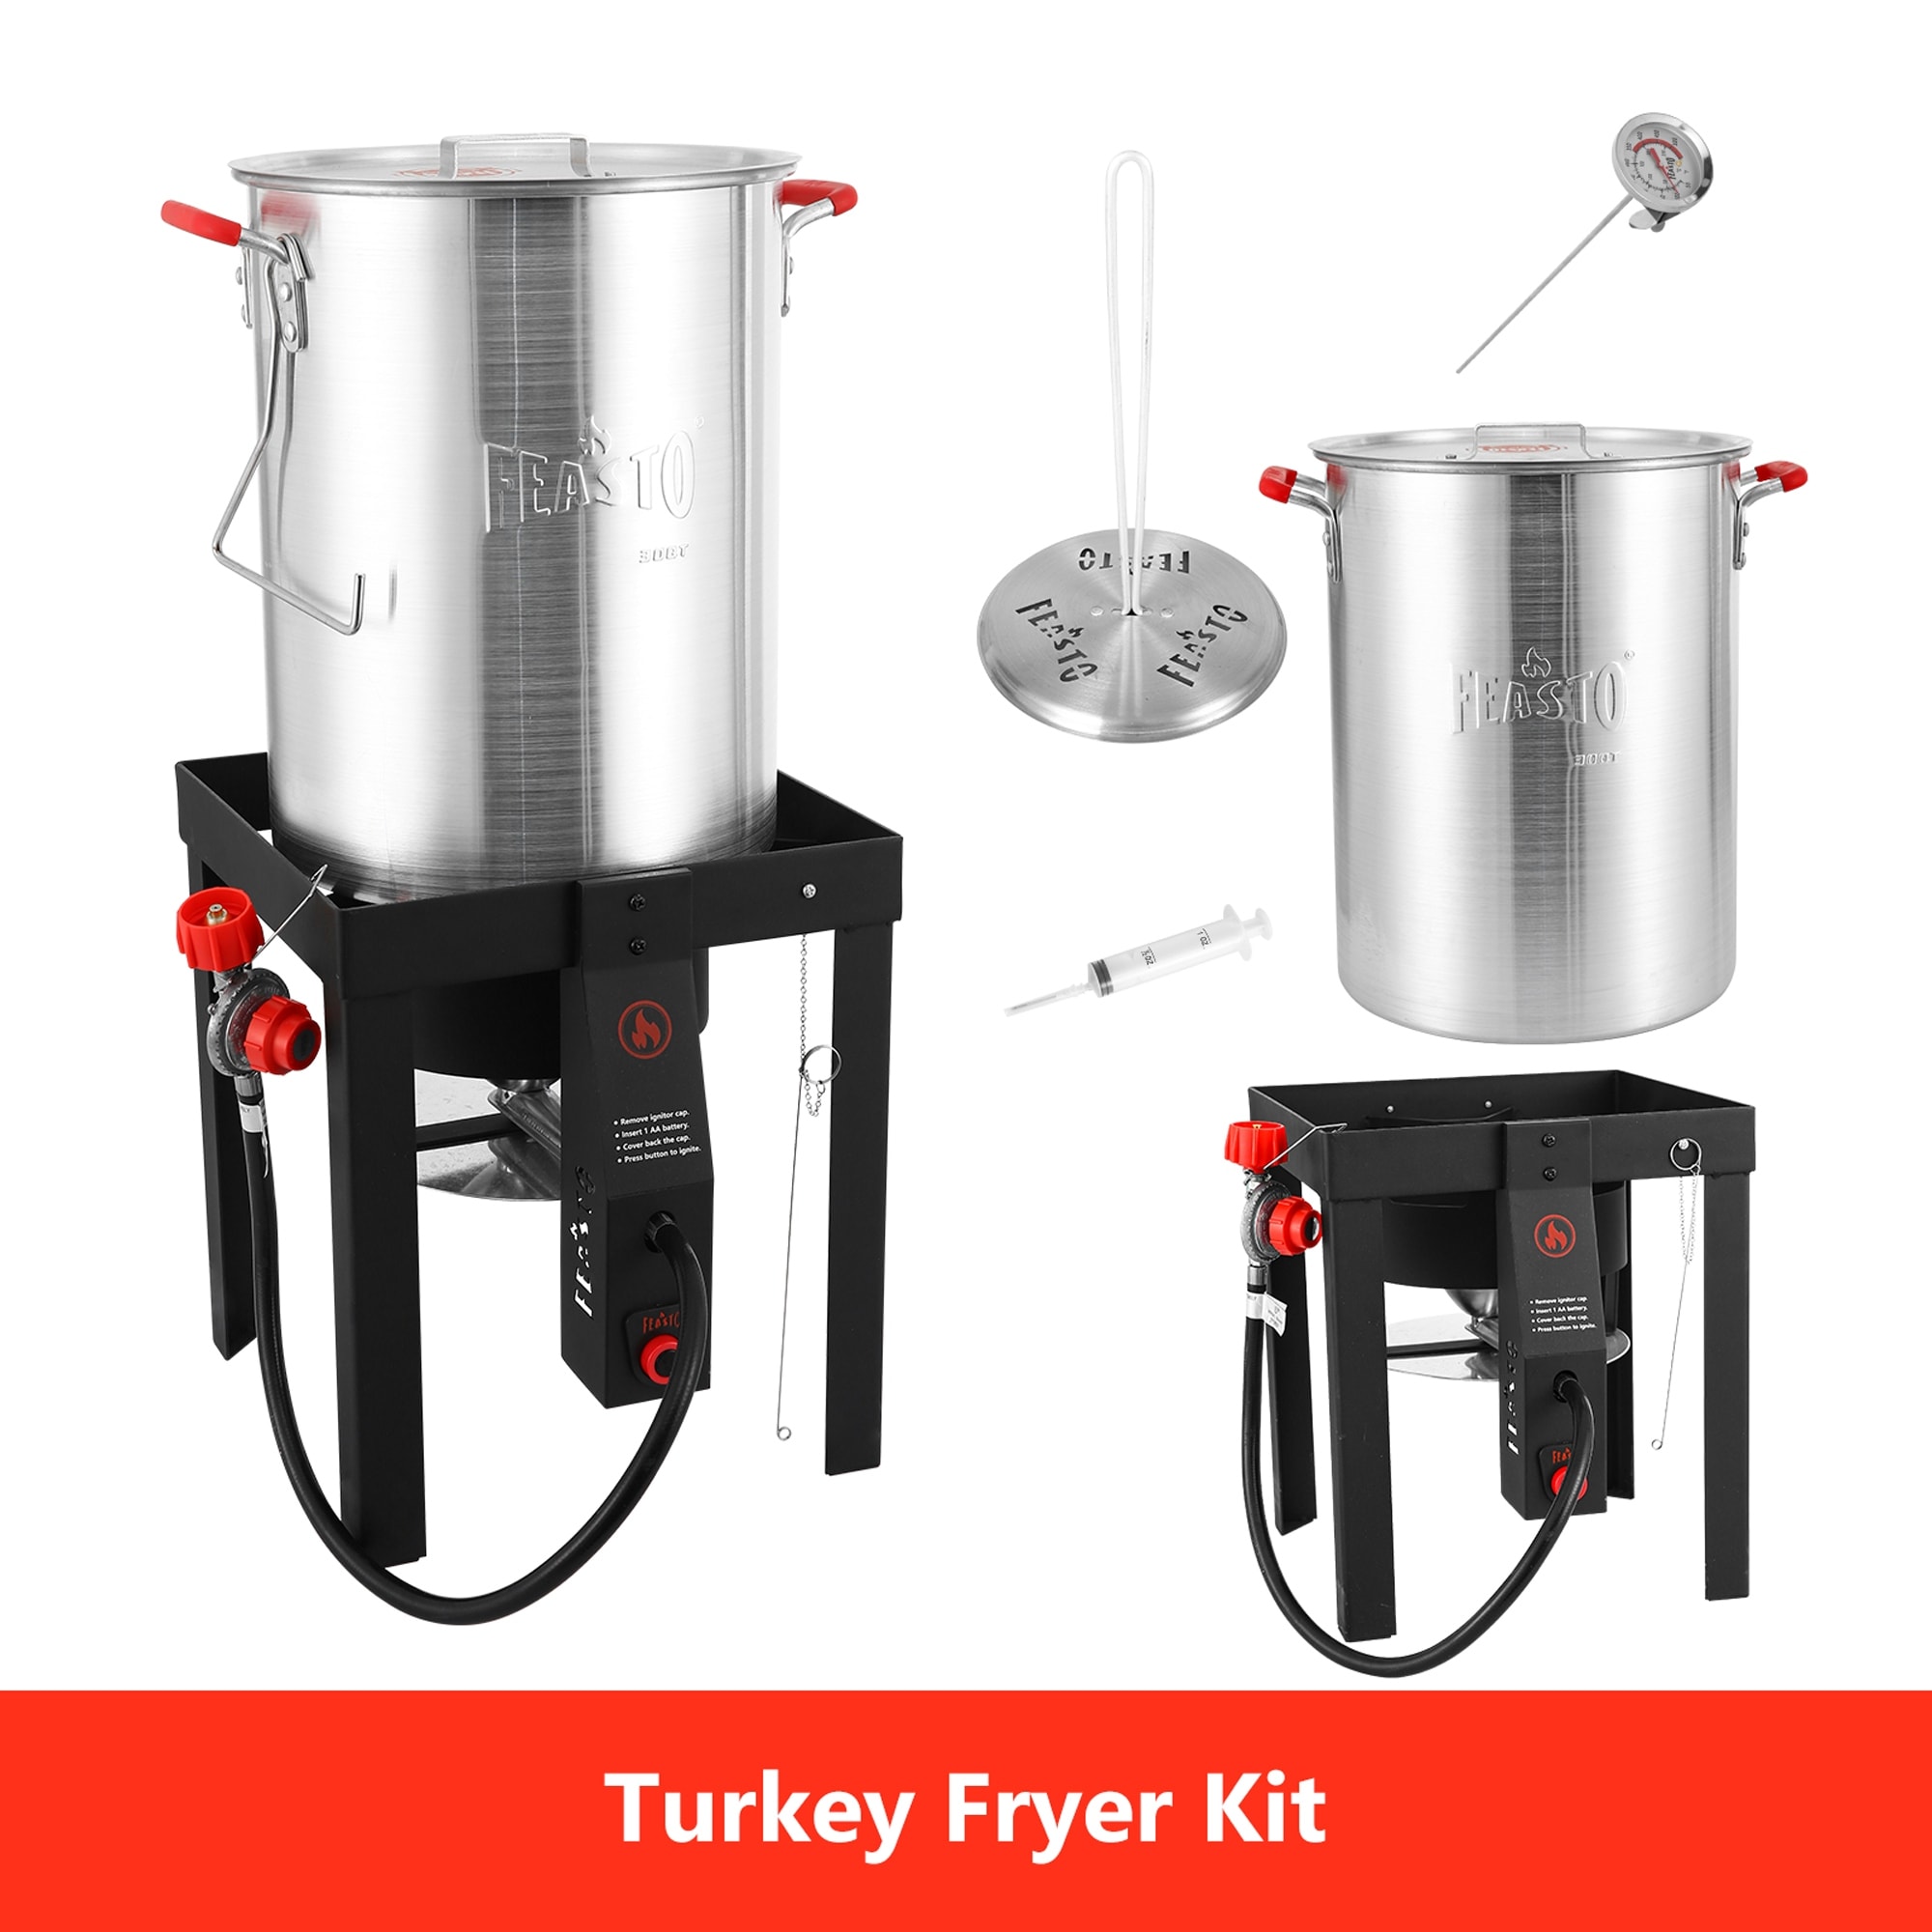 Turkey Fryer Kit, 30QT Aluminum Turkey Deep Fryer & 10QT Fish